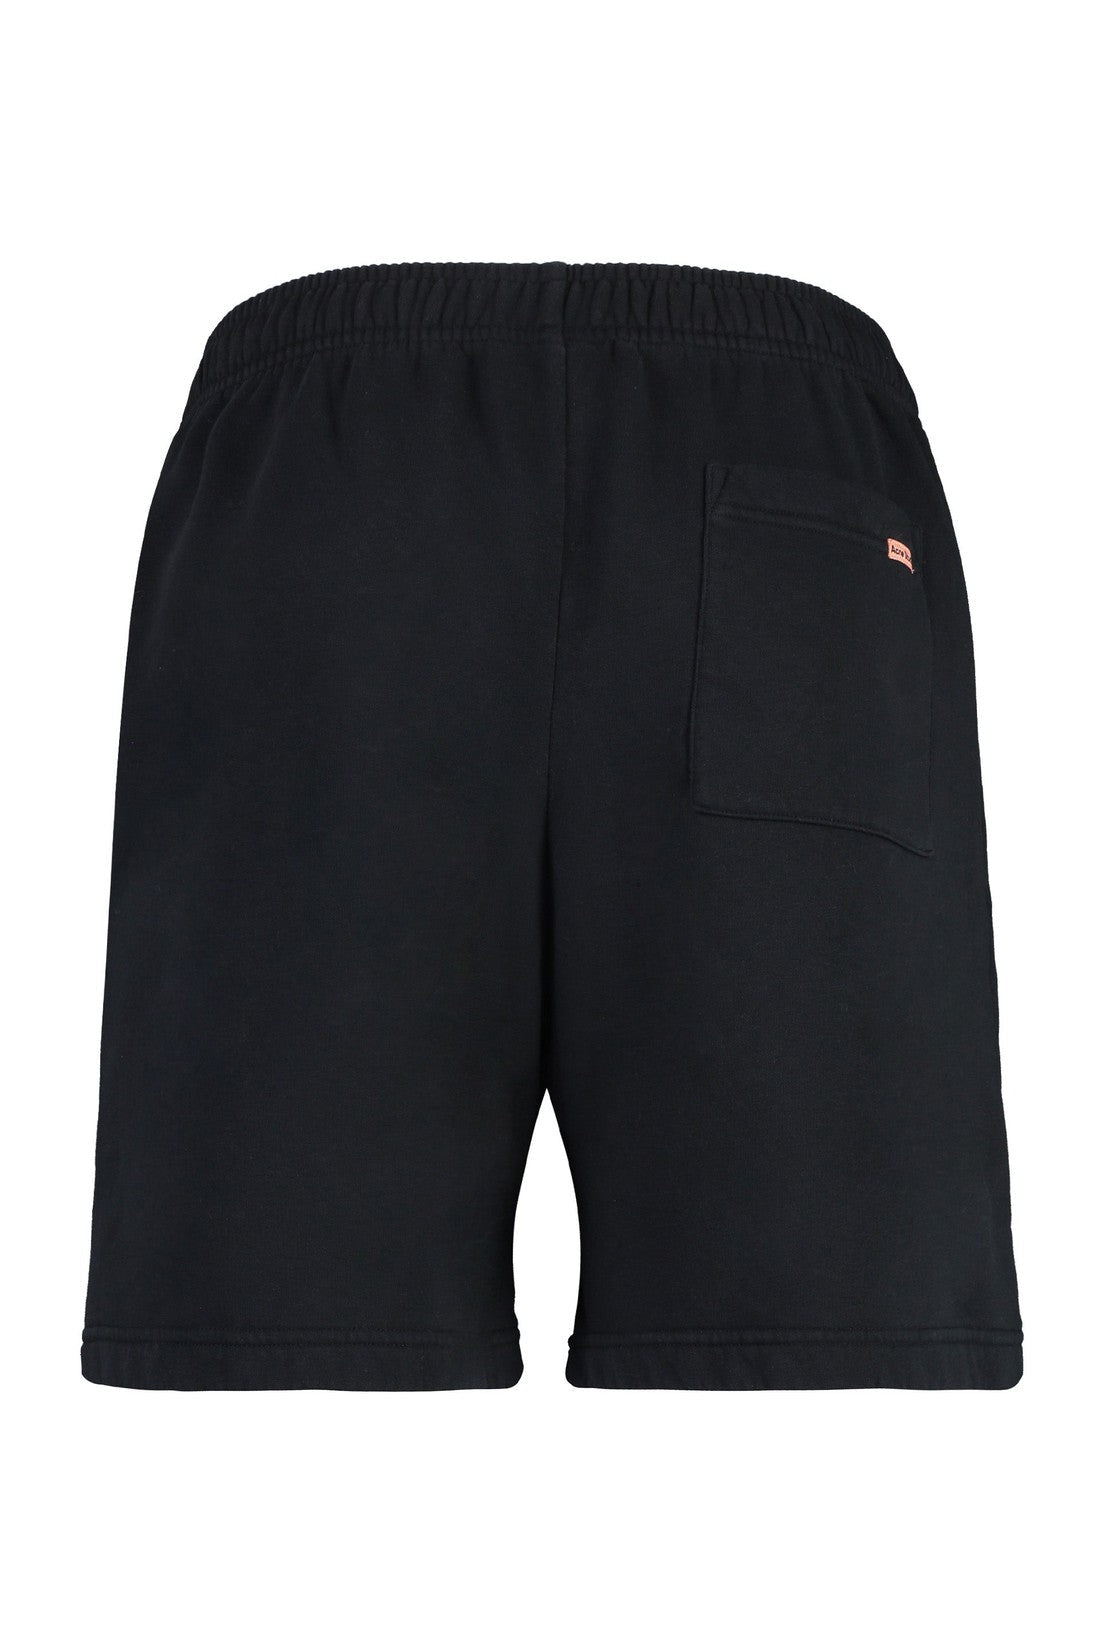 Acne Studios-OUTLET-SALE-Cotton bermuda shorts-ARCHIVIST